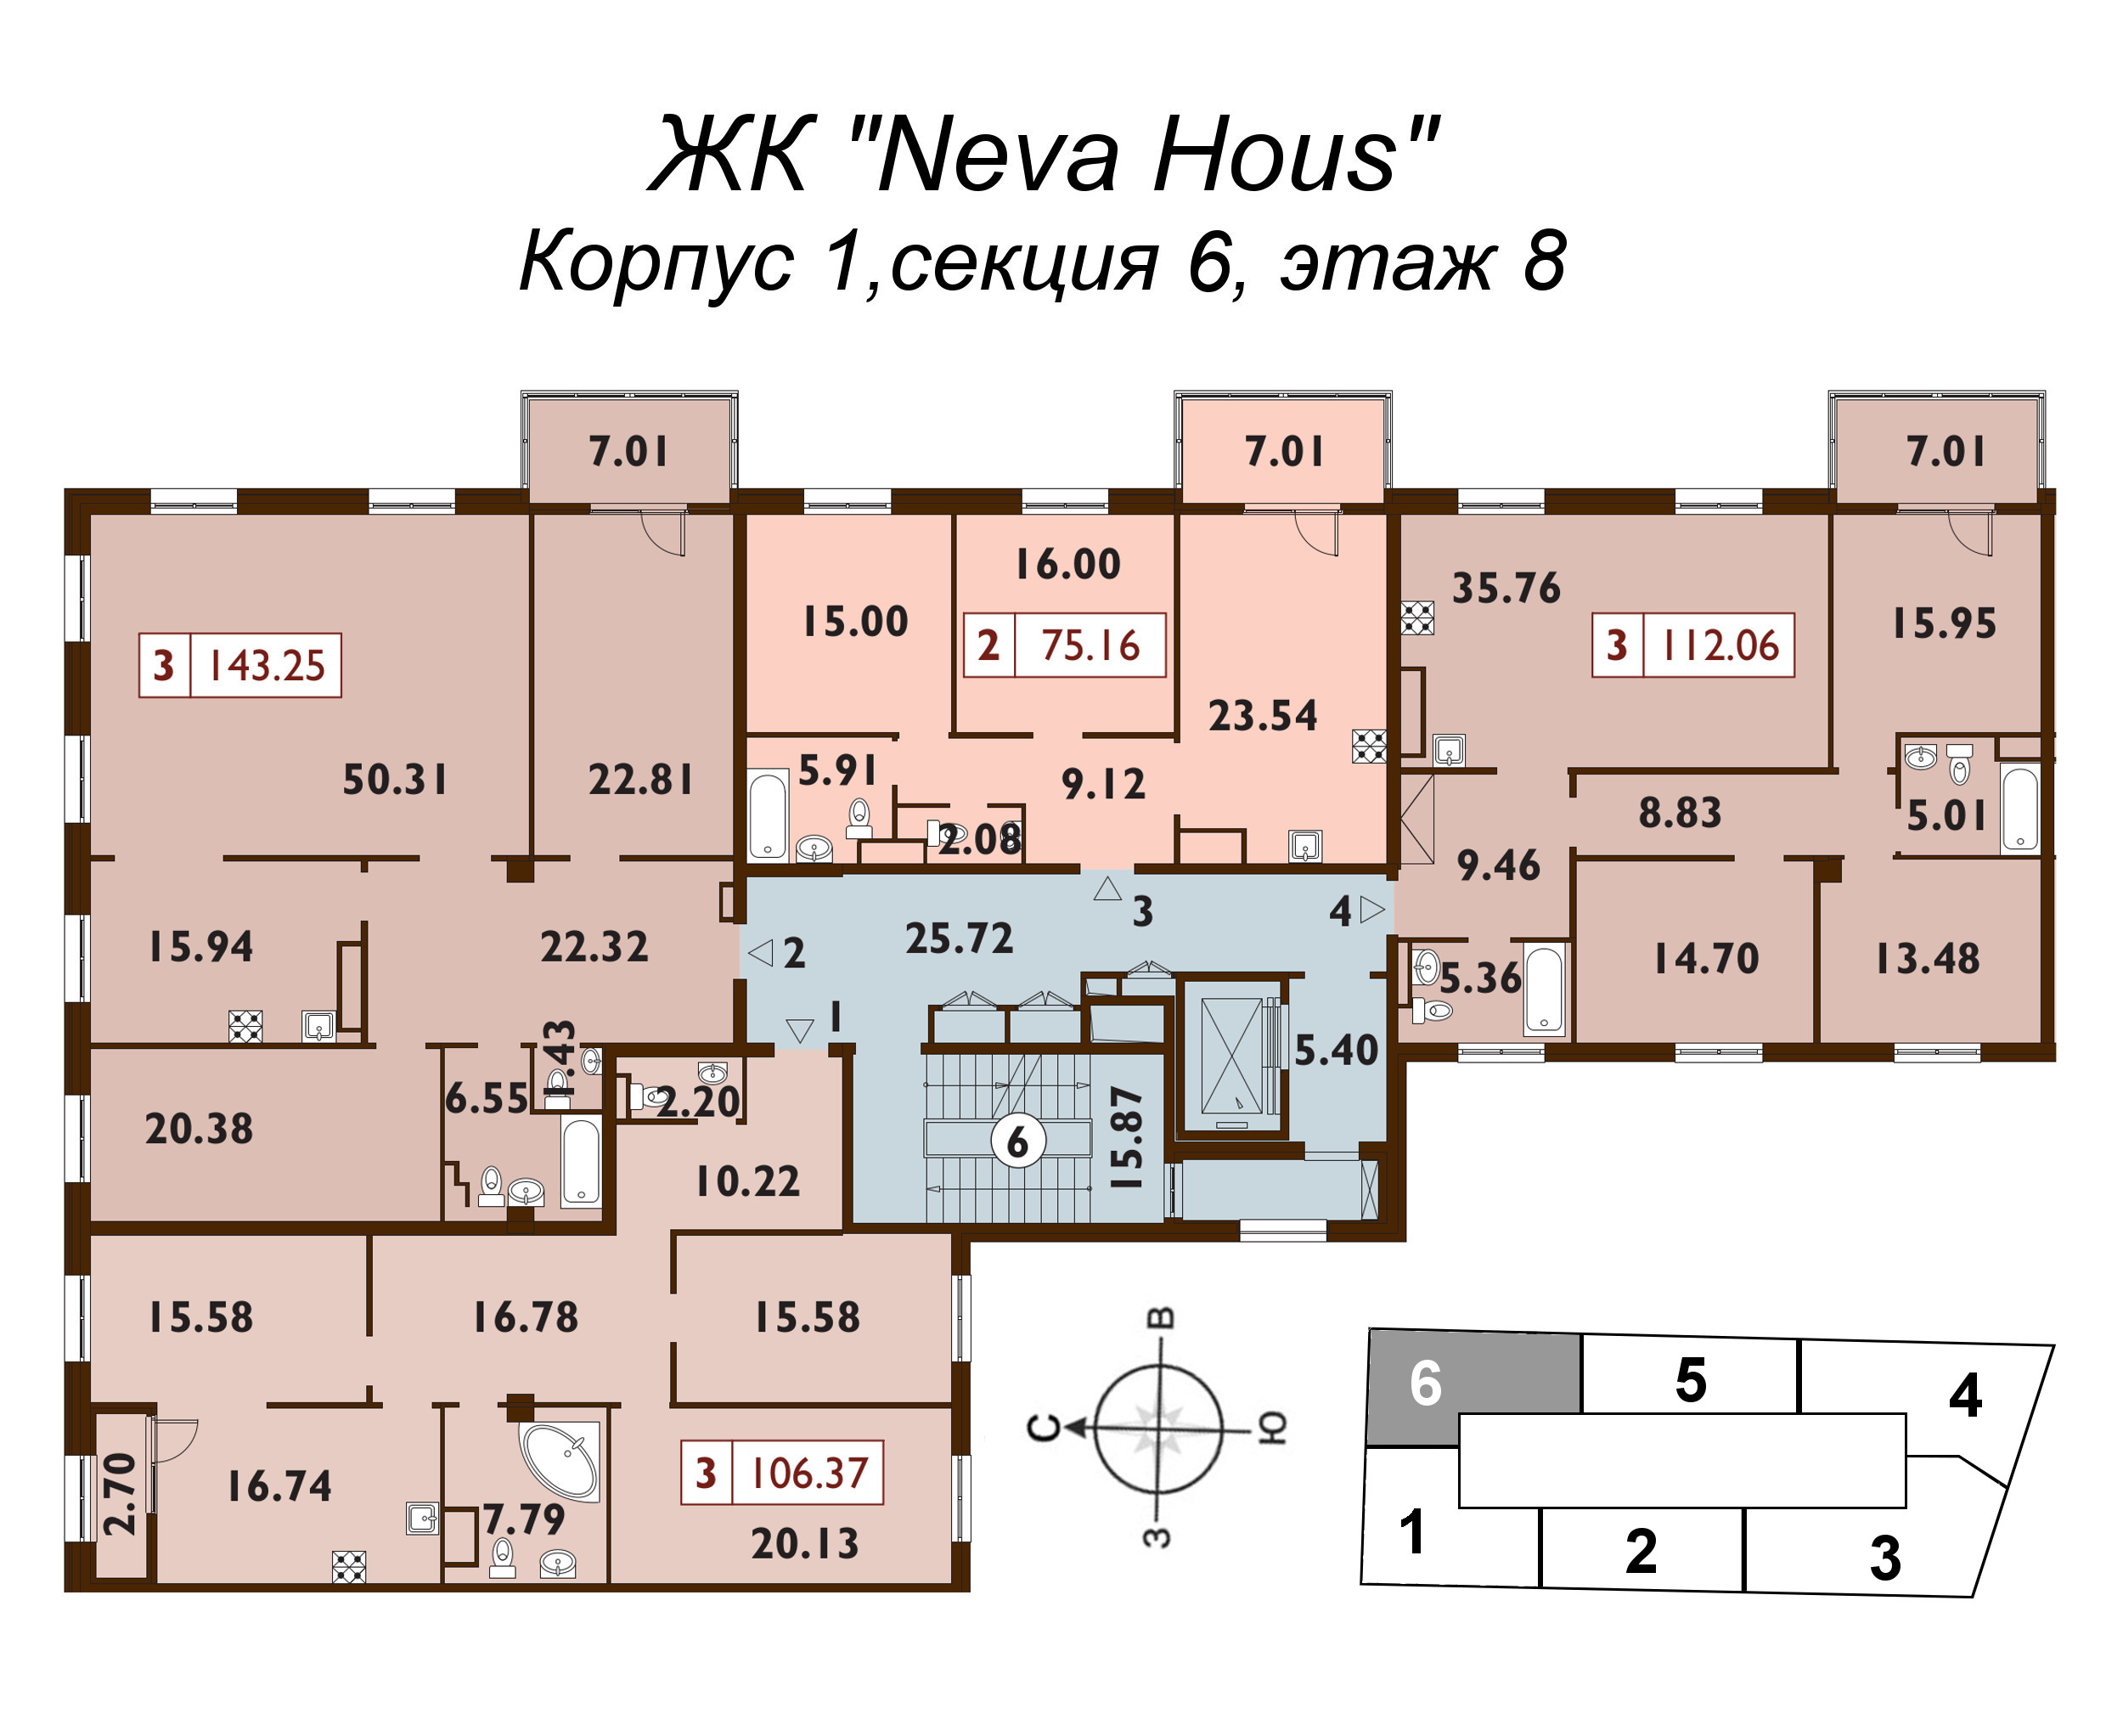 4-комнатная (Евро) квартира, 142.7 м² в ЖК "Neva Haus" - планировка этажа